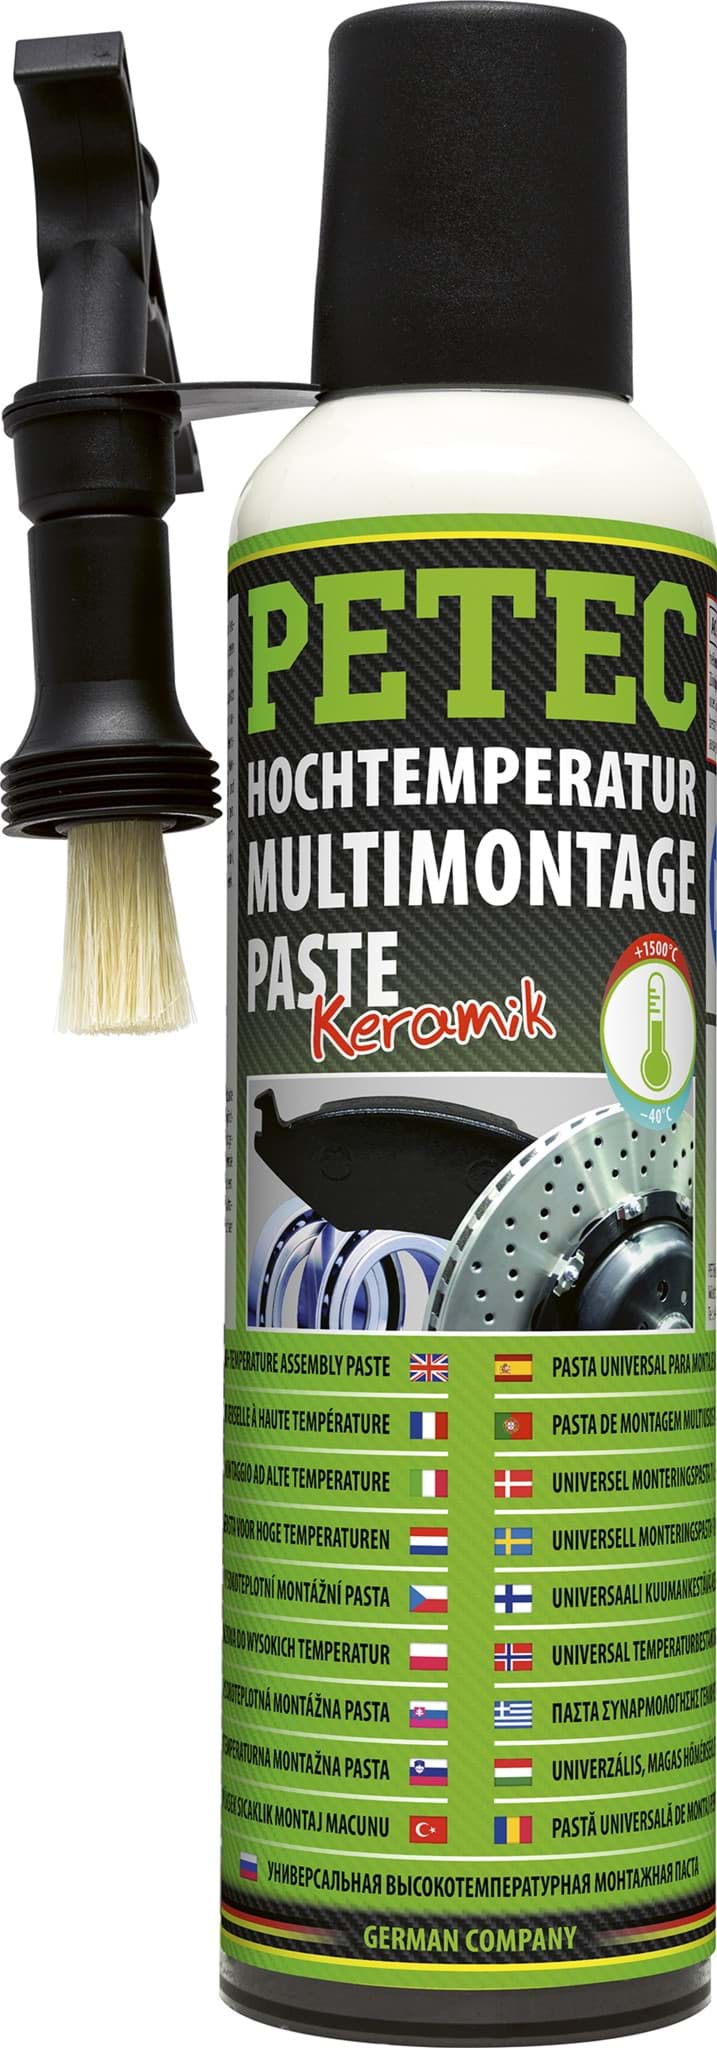 Picture of Petec Hochtemperatur Montagepaste Keramikpaste bis 1500°C